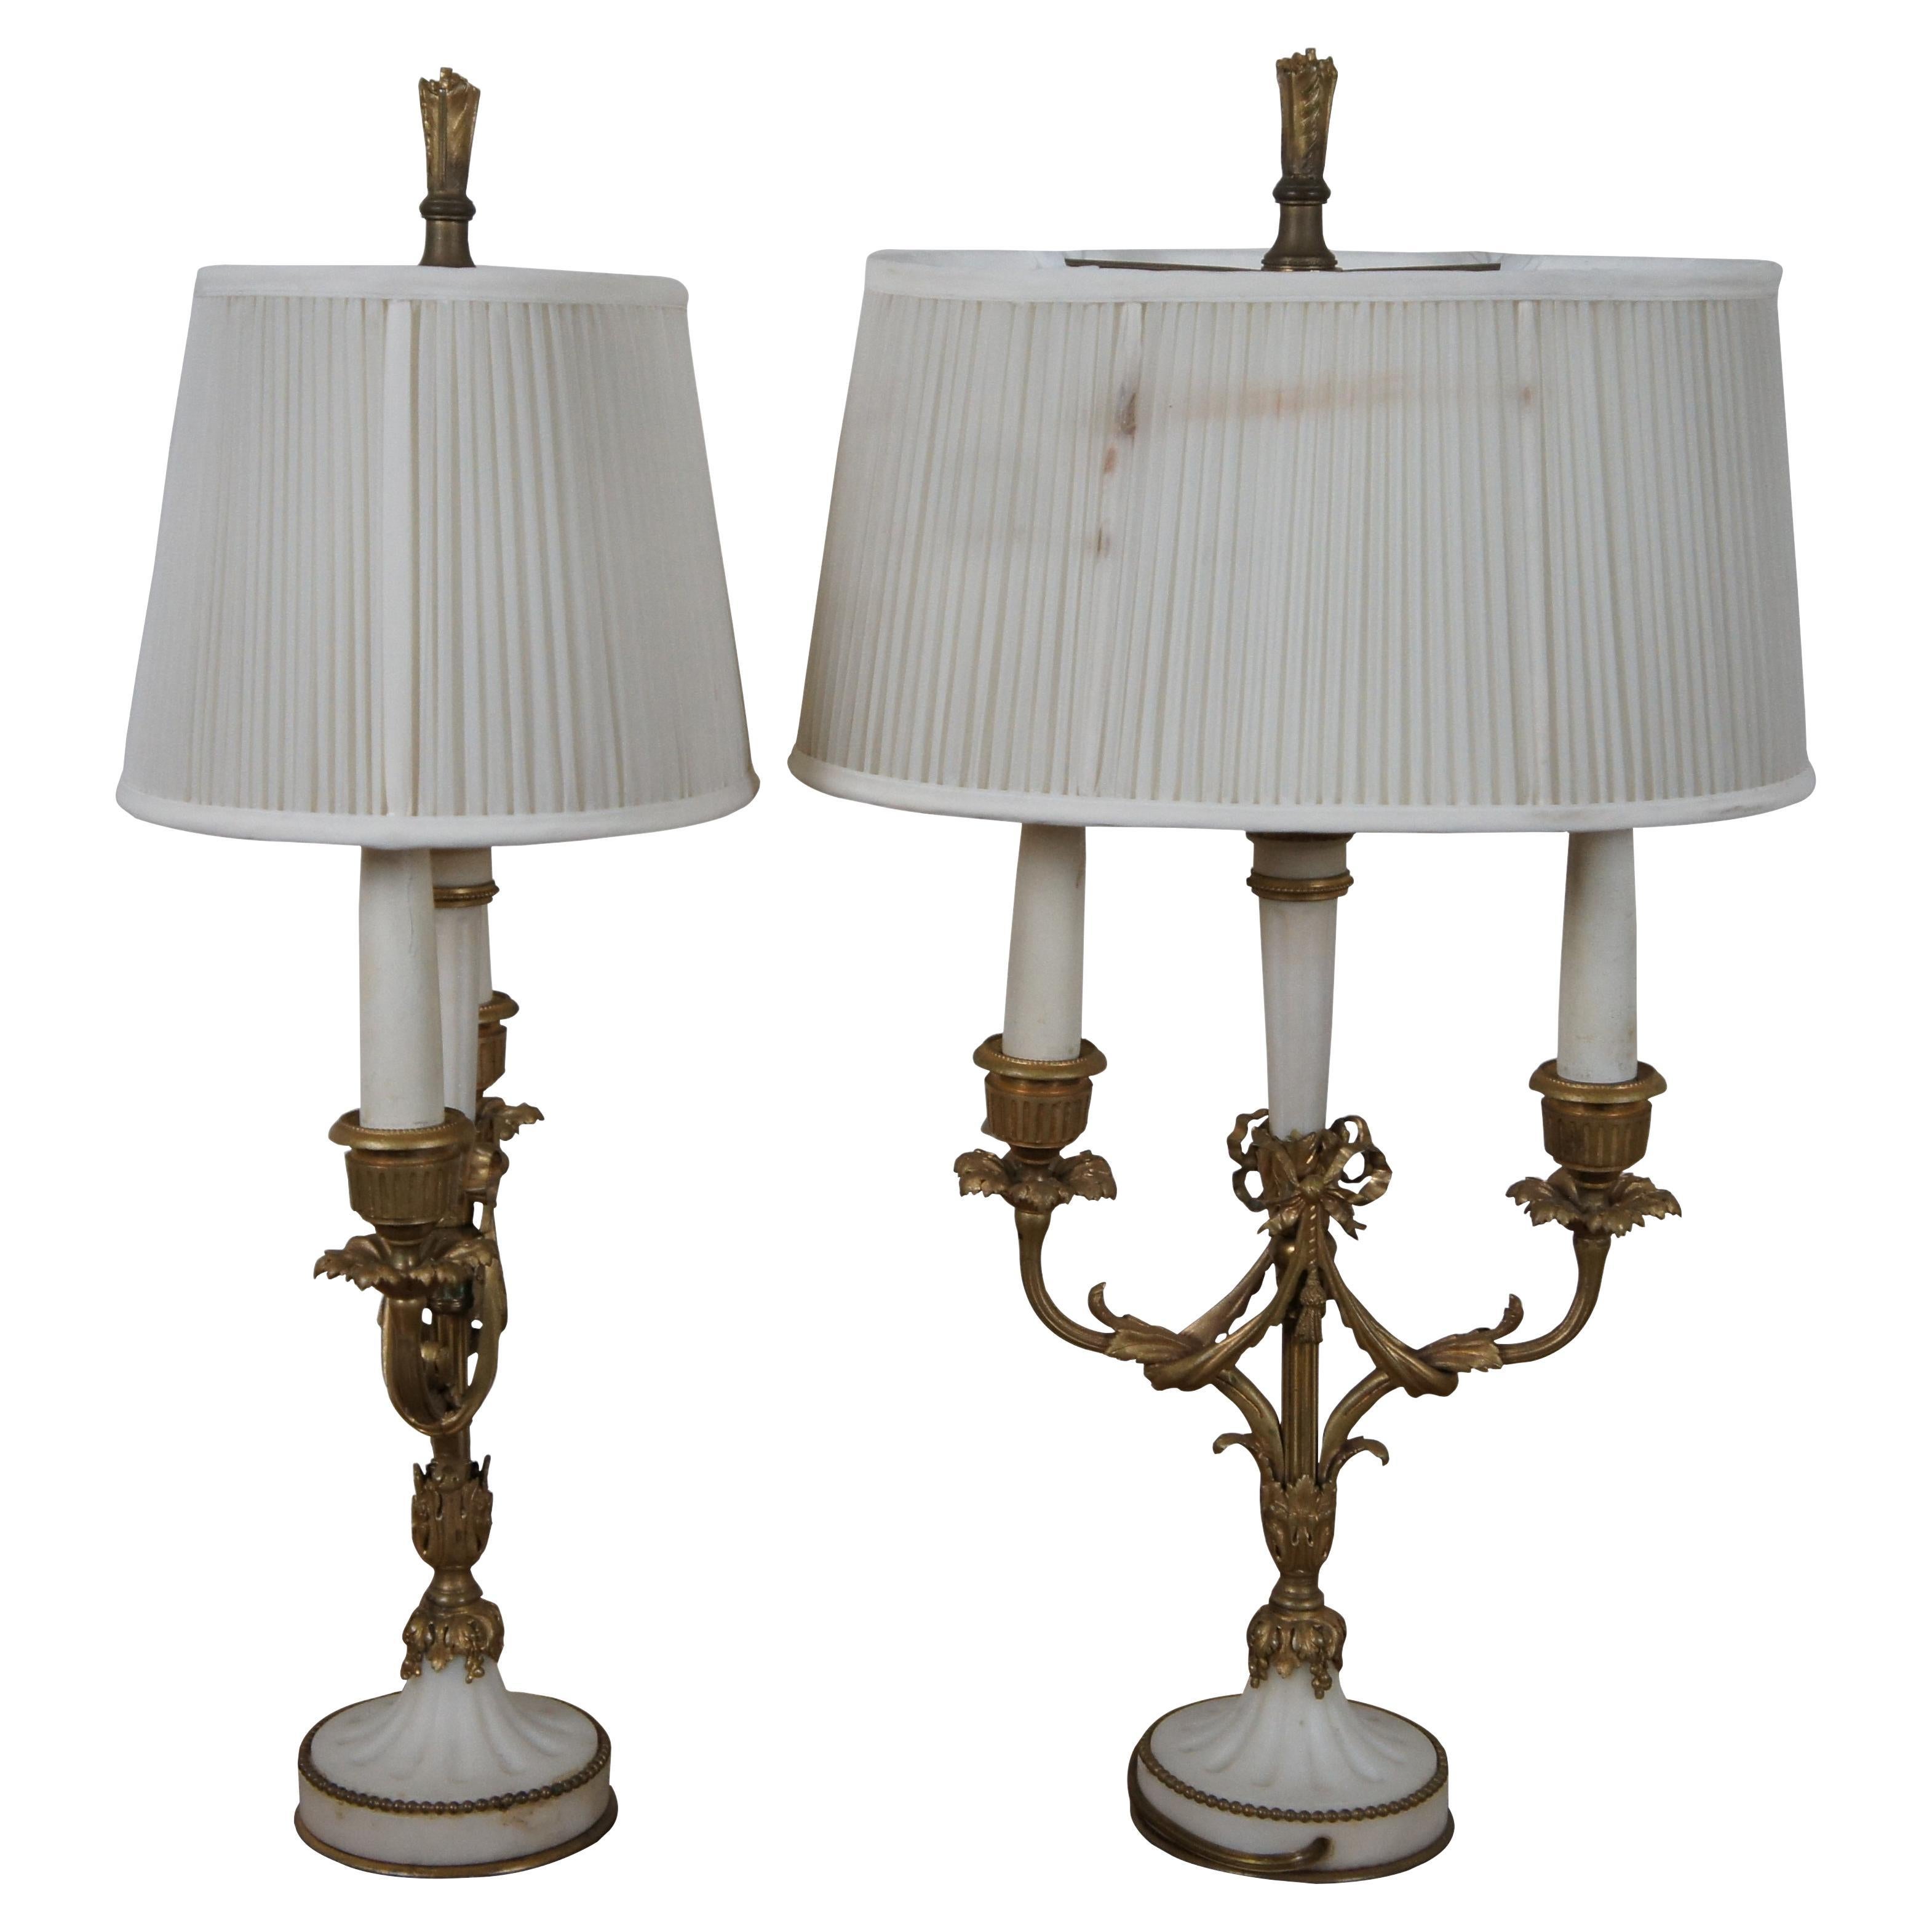 Paire d'anciennes lampes de table bouillotte néoclassique française à deux lumières, avec des accents de pierre d'albâtre blanche et des cannelures complexes en bronze doré. Le corps et les bras présentent un motif floral d'acanthe et de ruban, avec